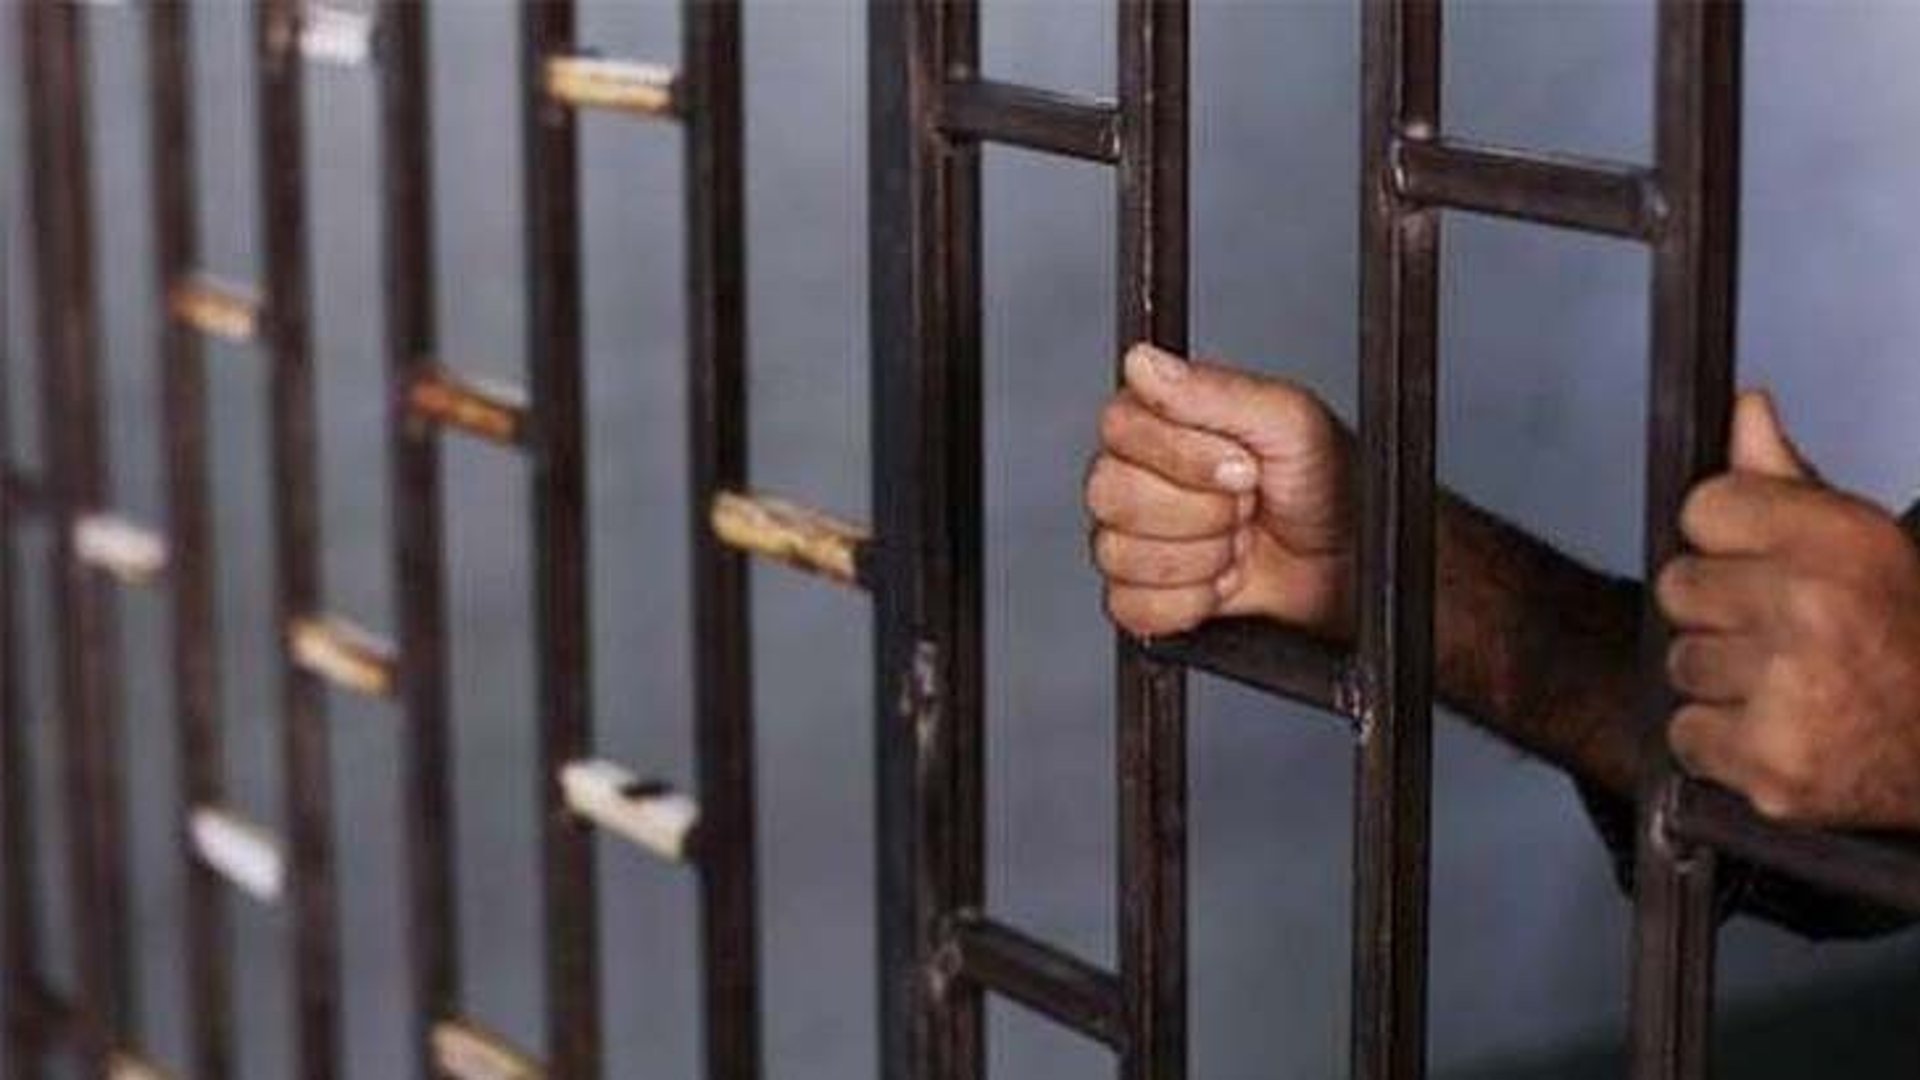 القانونية النيابية تستبعد تمرير أو قراءة مسودة العقوبات البديلة للسجناء